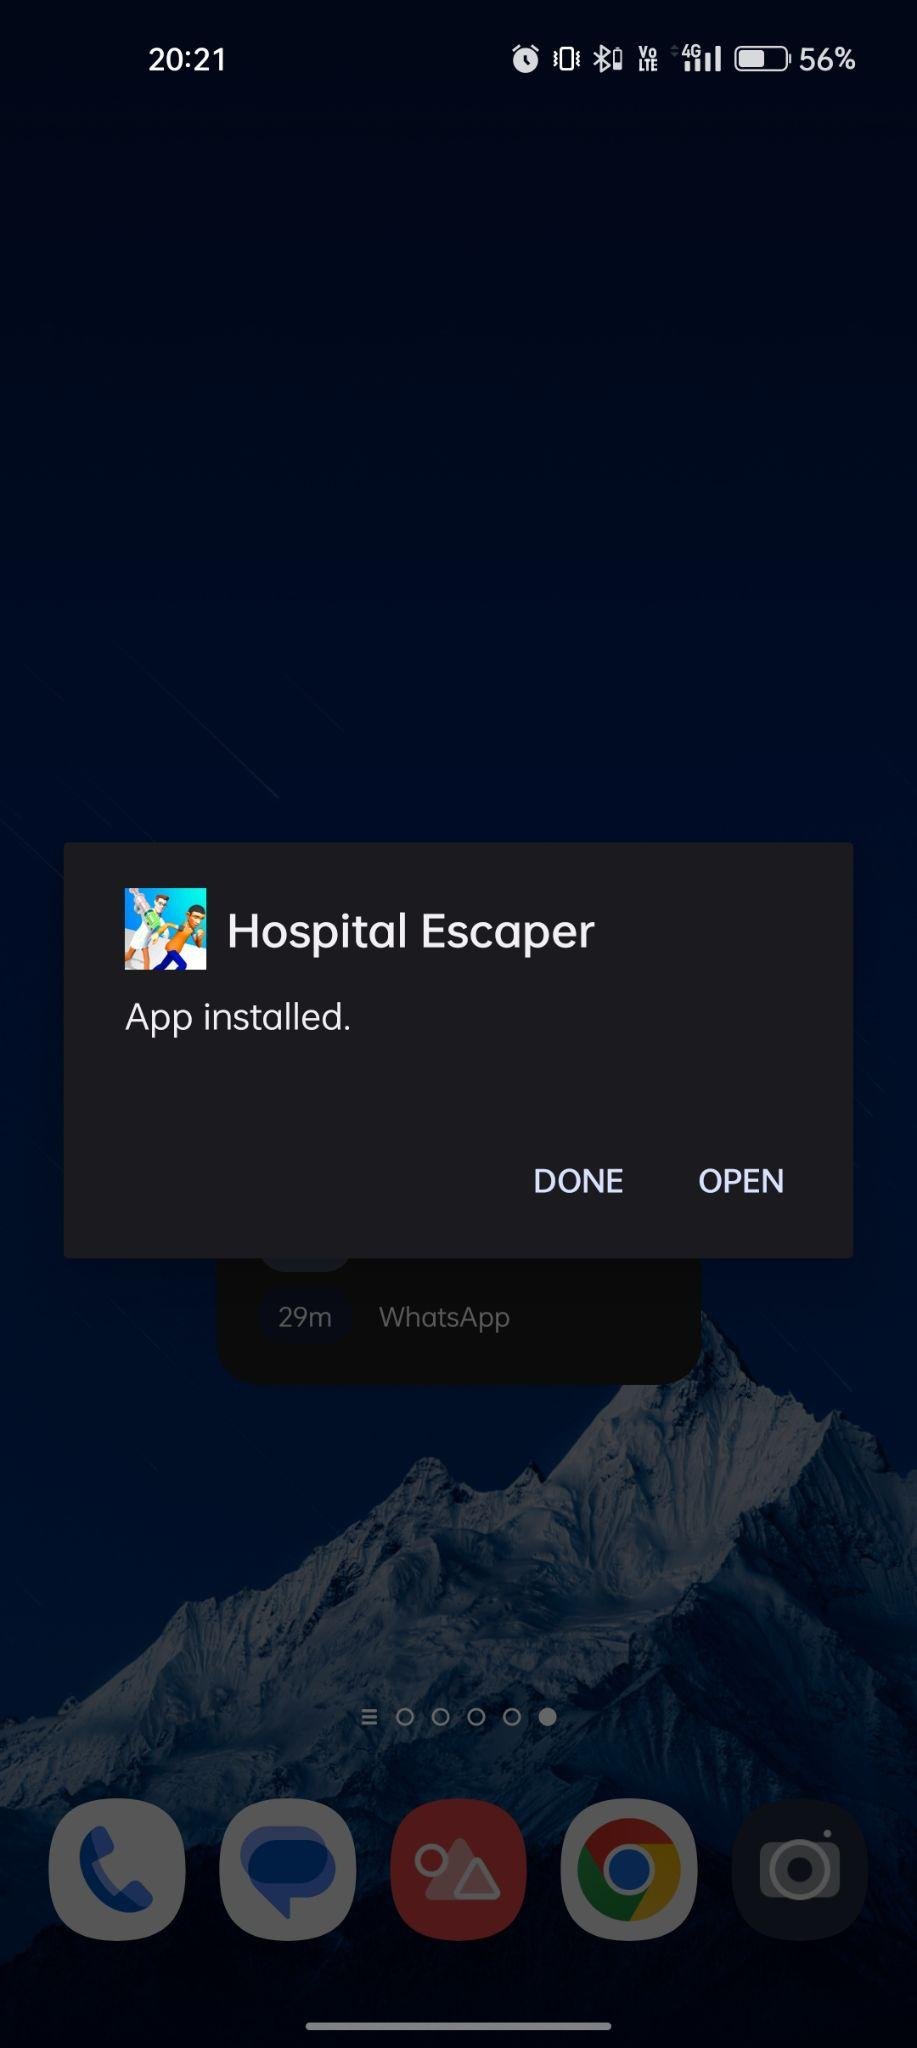 Hospital Escaper apk installed